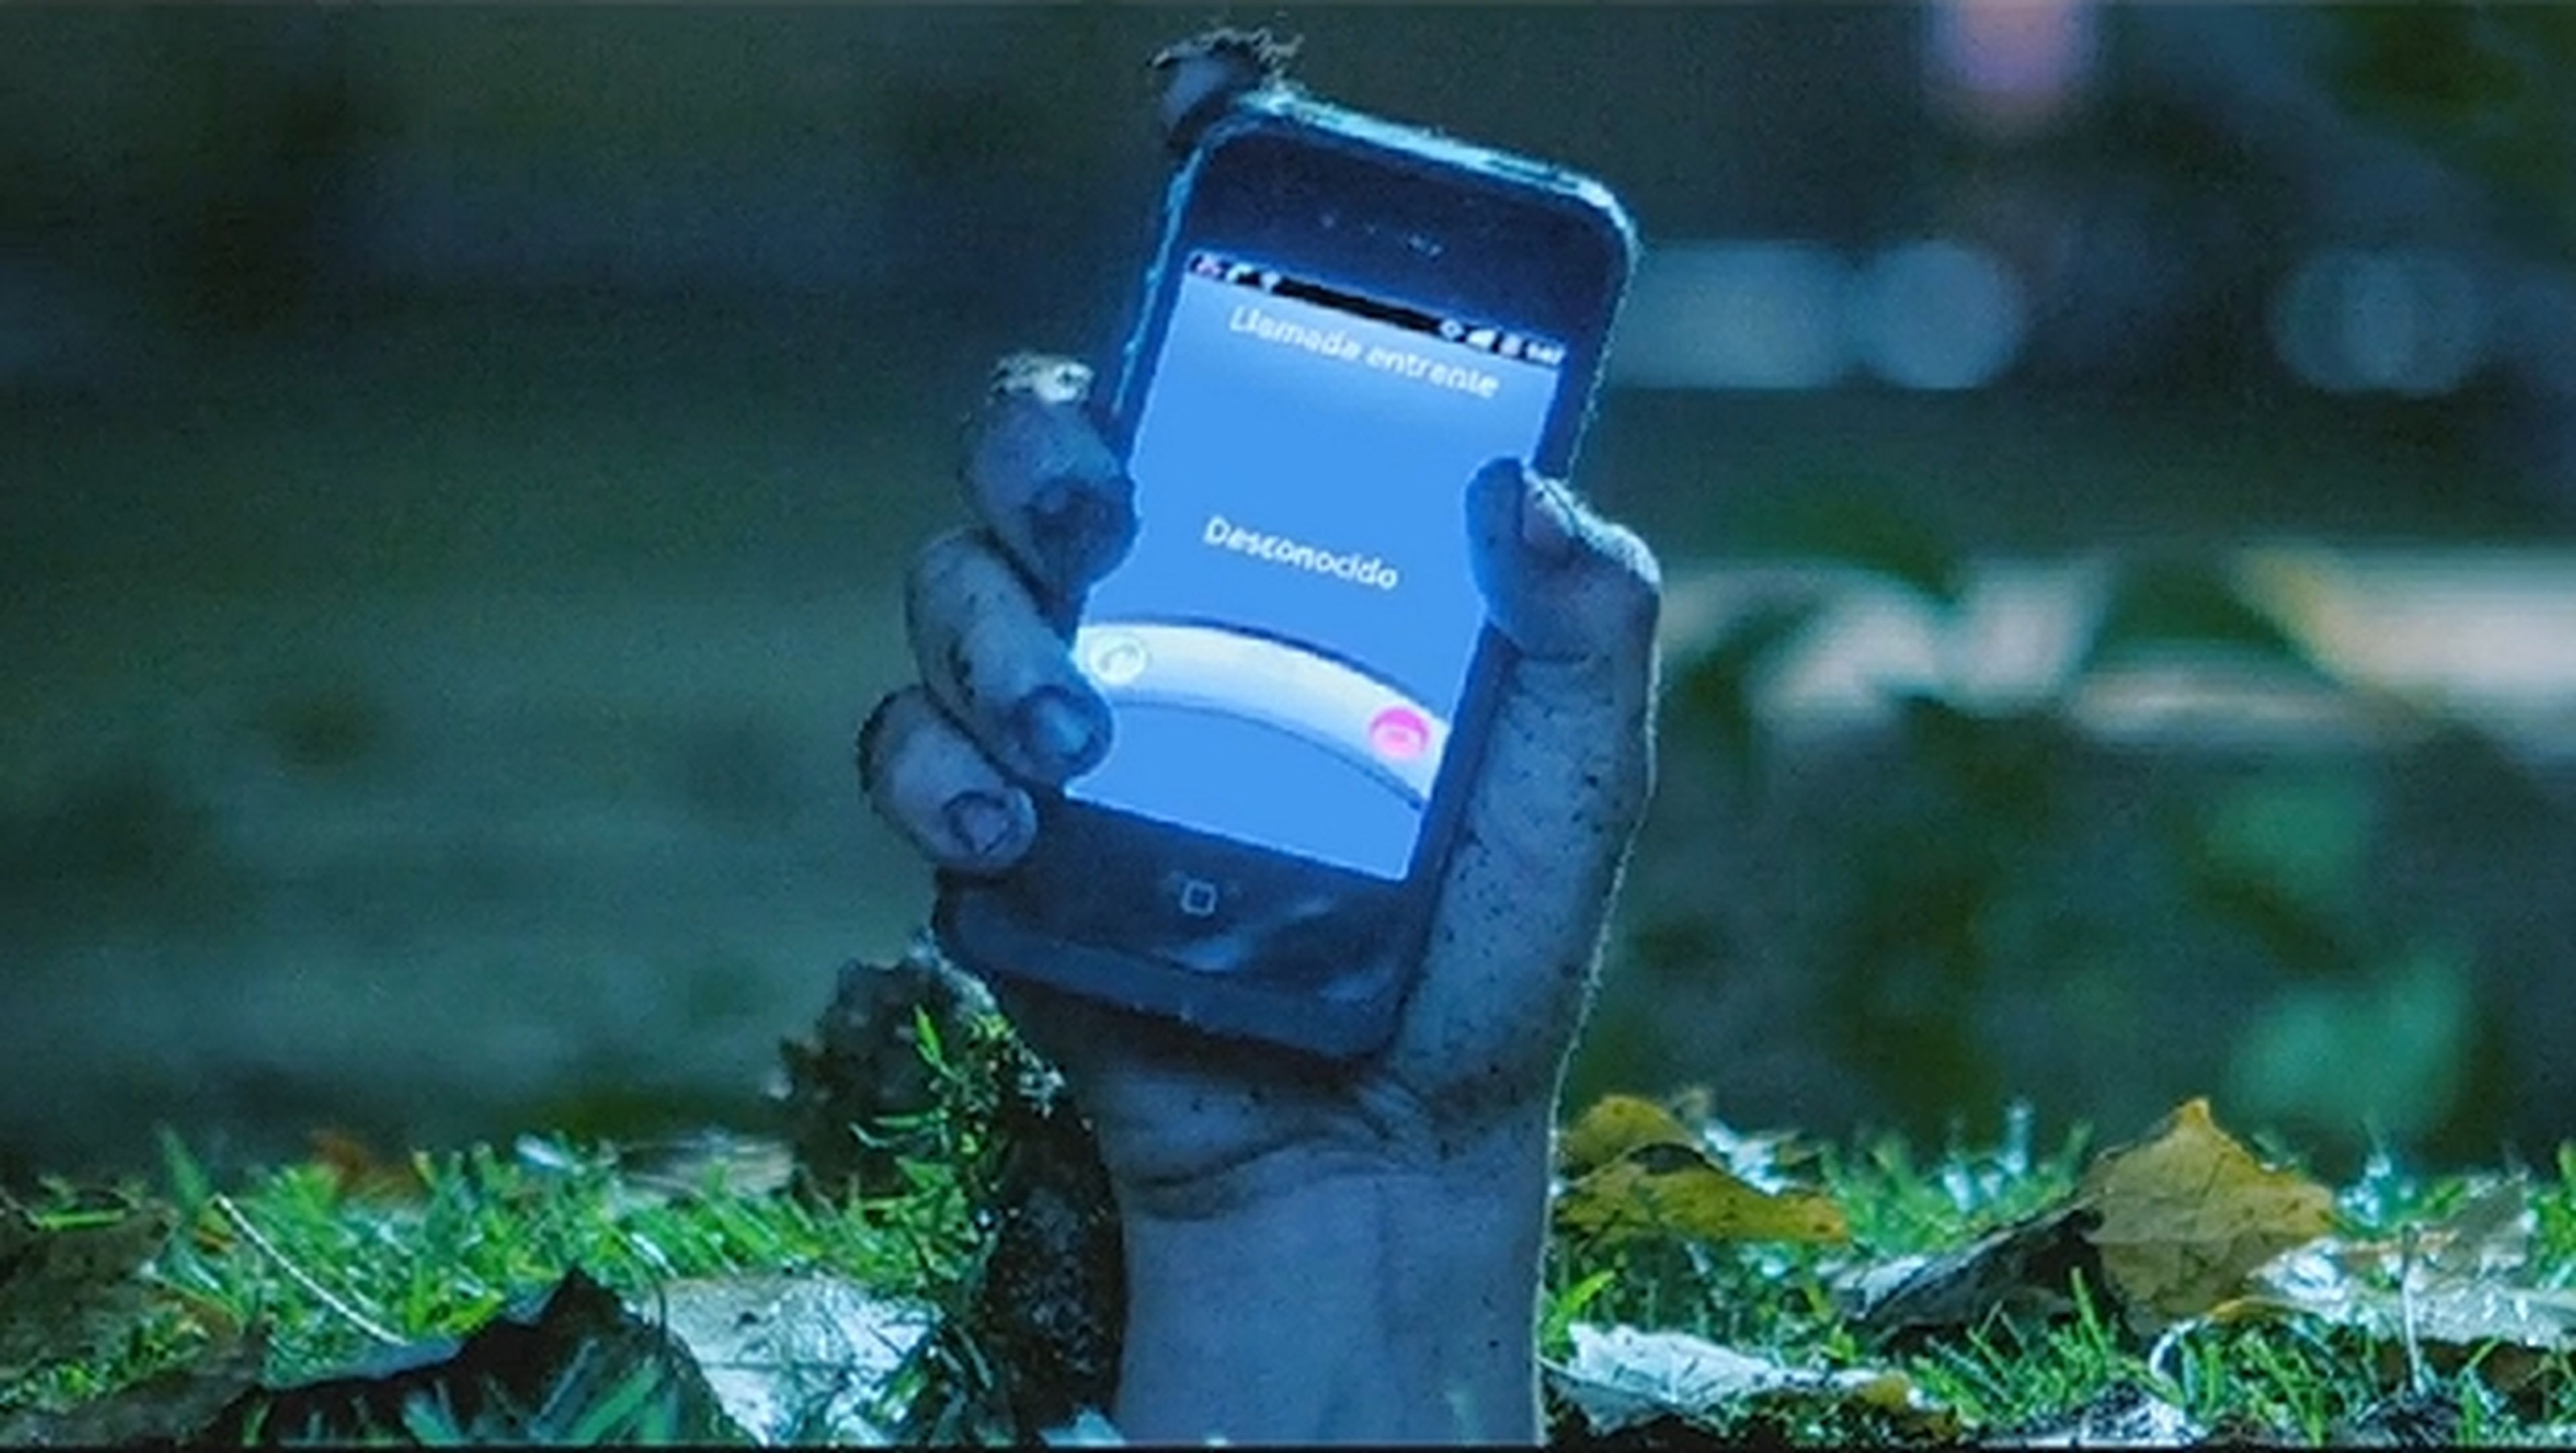 The Phonbies, la campaña estilo película de zombis que alerta sobre la adicción a la tecnología en los jóvenes.